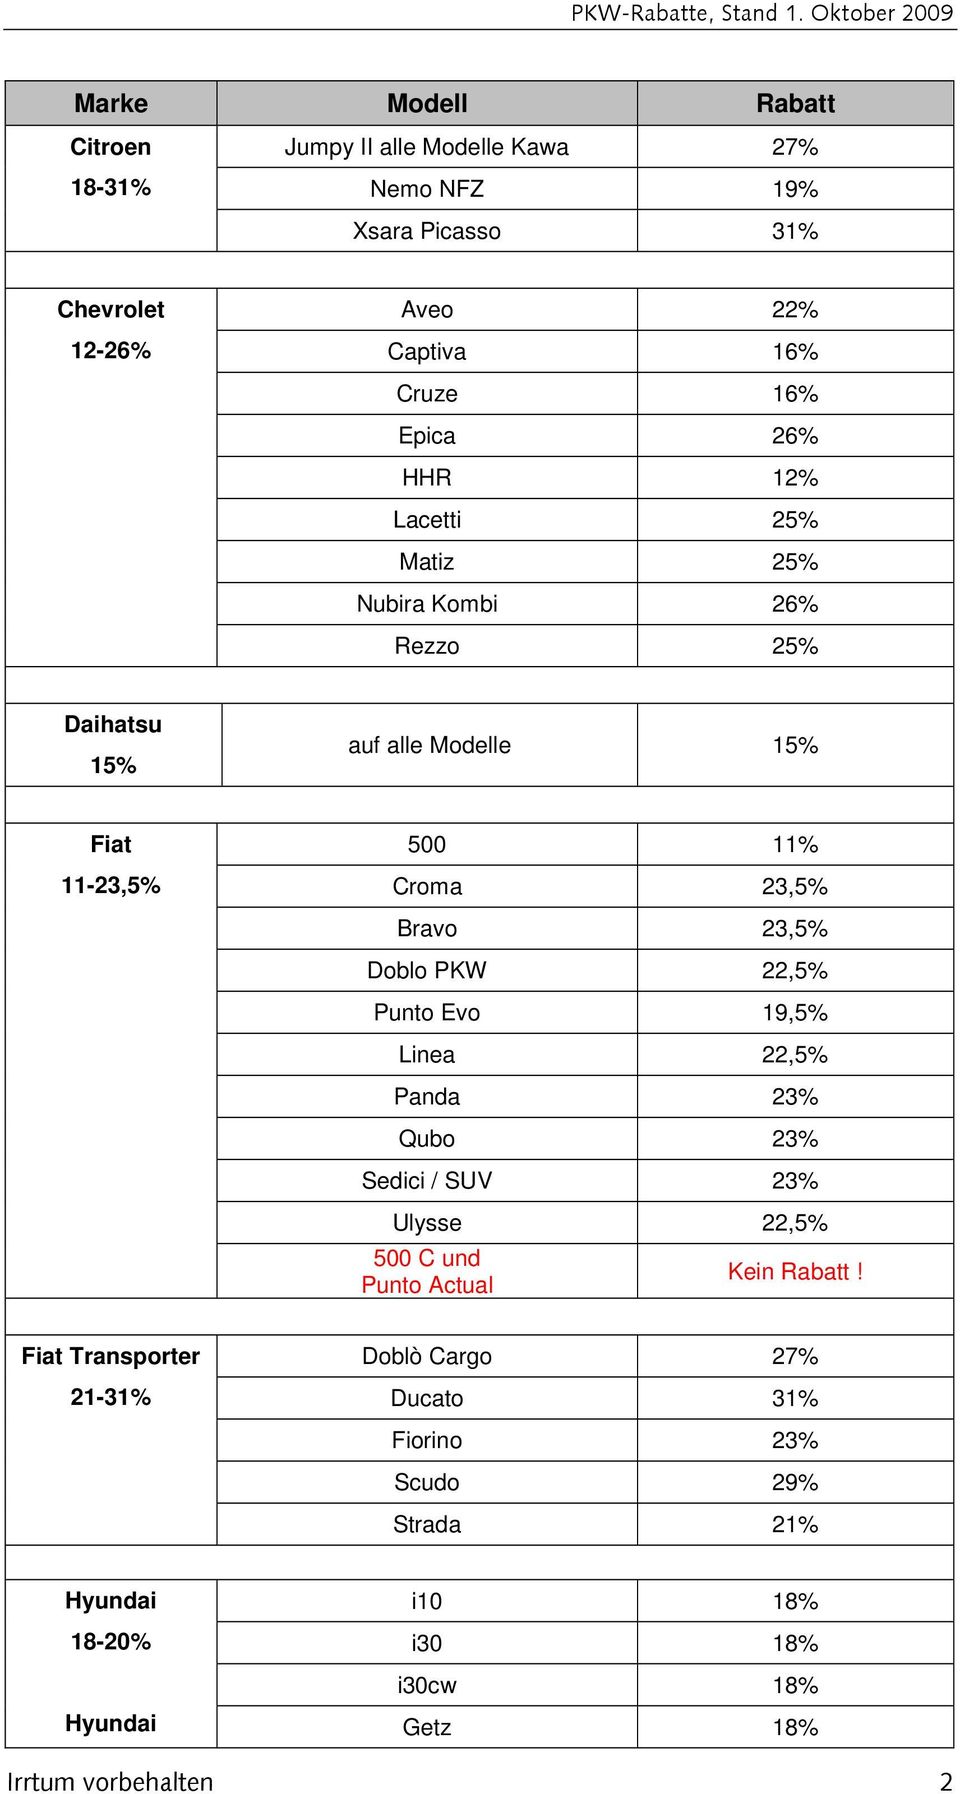 Doblo PKW 22,5% Punto Evo 19,5% Linea 22,5% Panda 23% Qubo 23% Sedici / SUV 23% Ulysse 22,5% 500 C und Punto Actual Kein Rabatt!